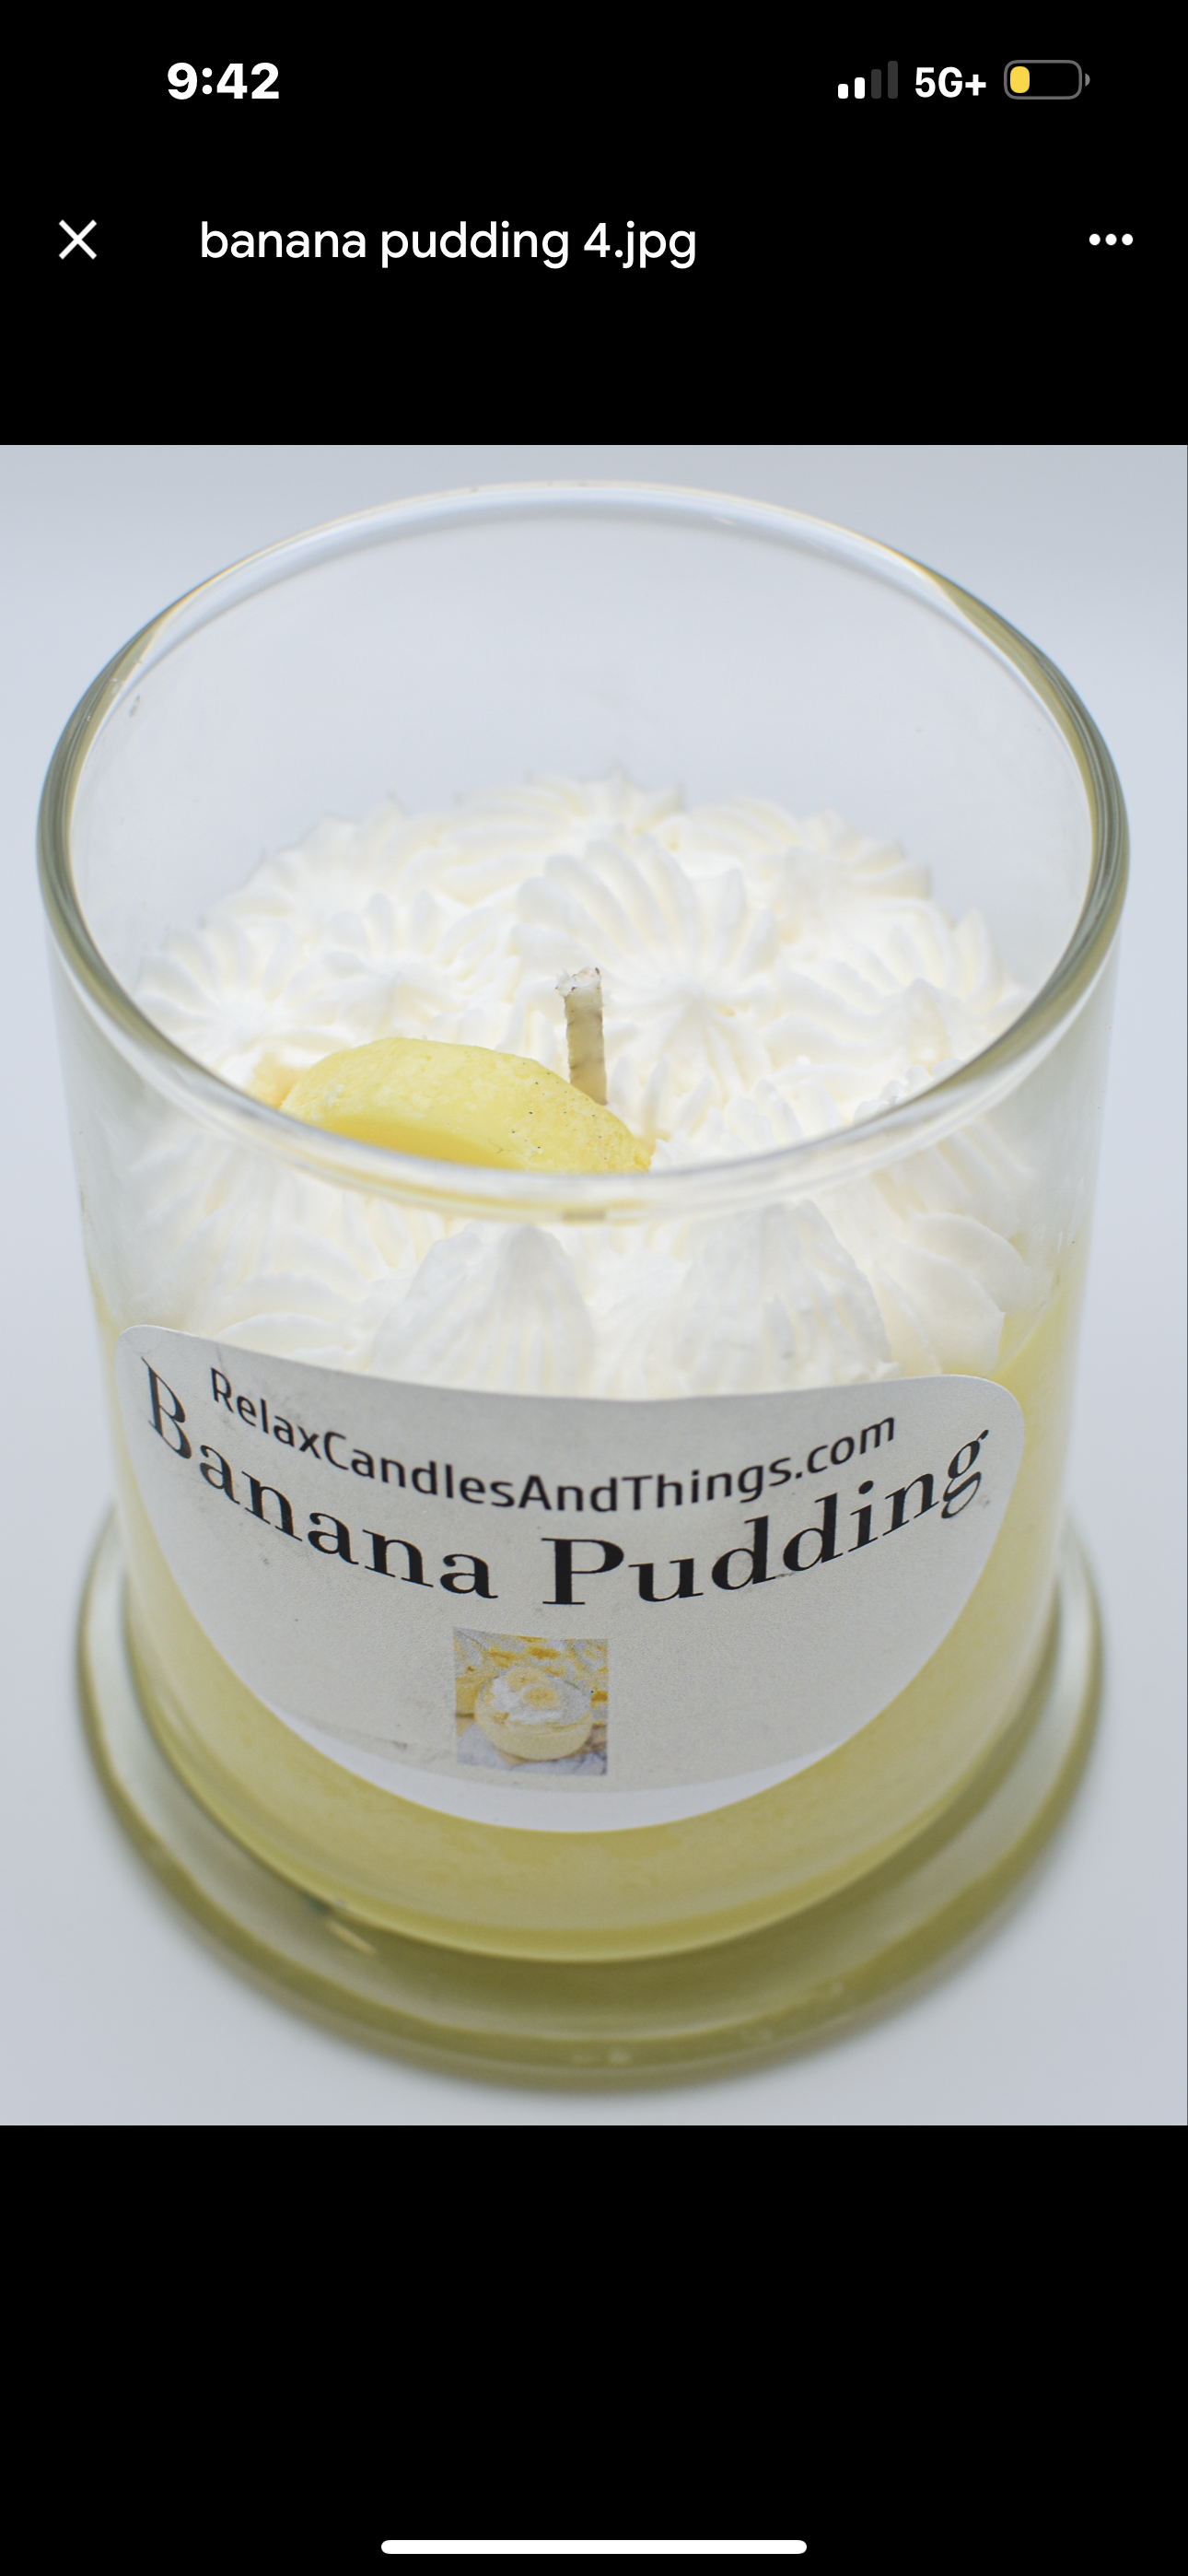 Banana Pudding Candle